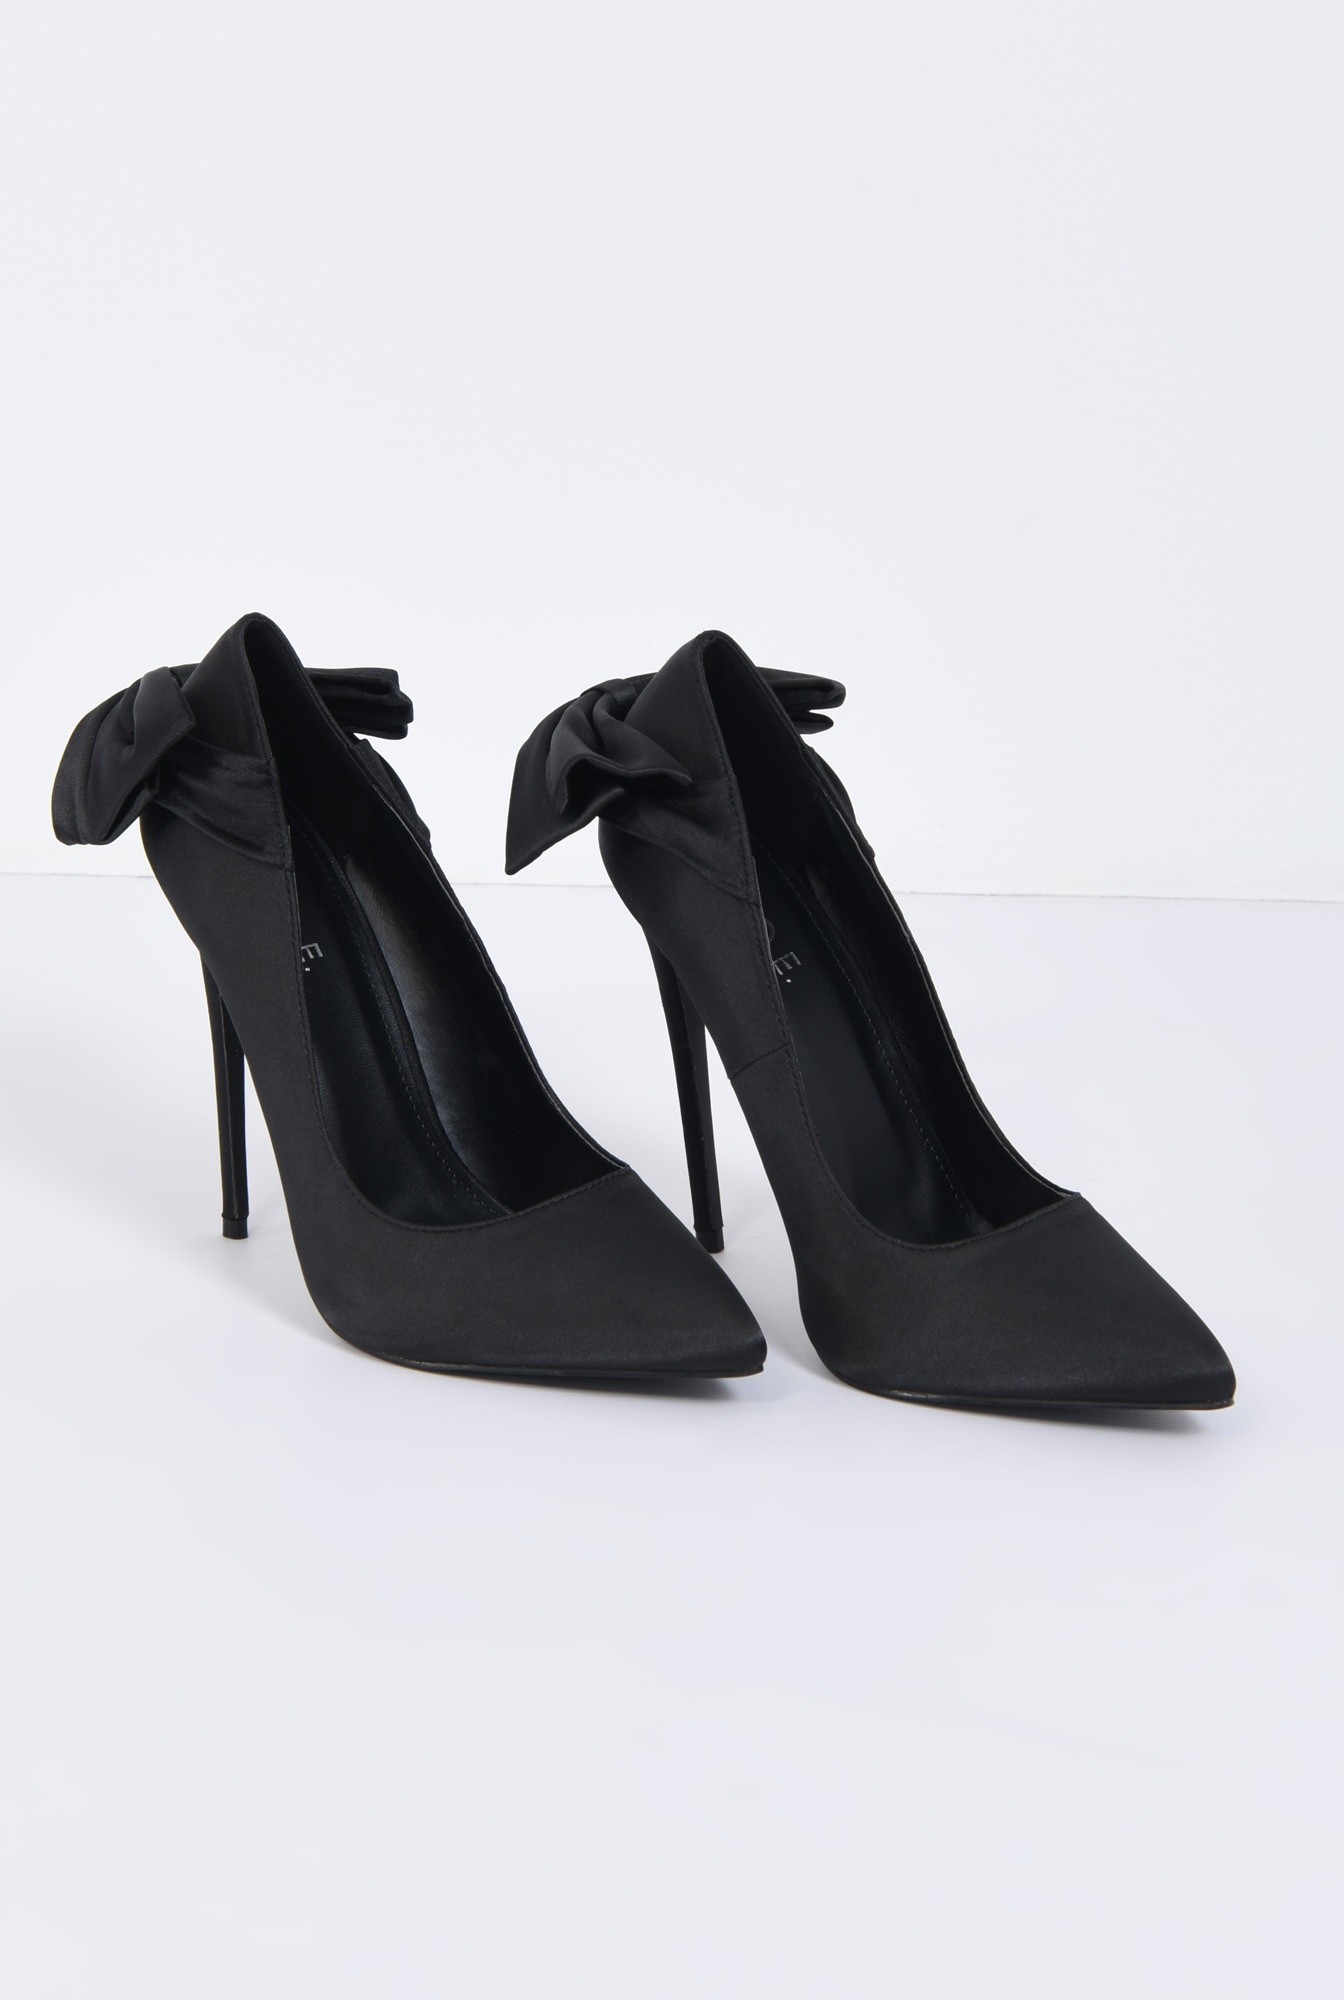 3 - pantofi eleganti, negru, satin, stiletto